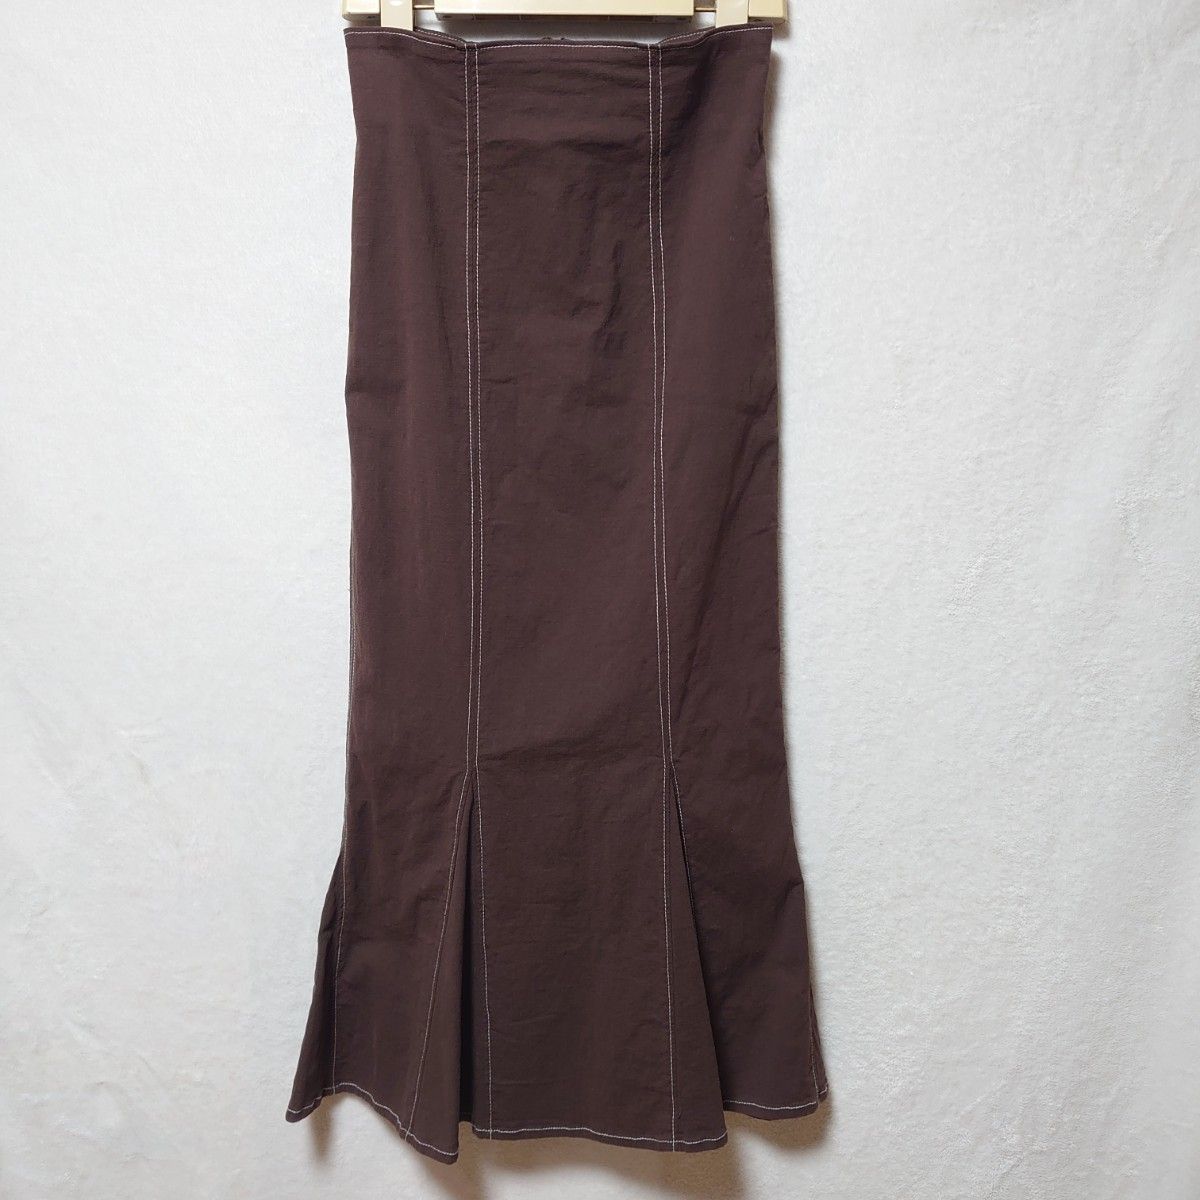 GRL　マーメイド ツイル配色 ステッチスカート　Mサイズ　ブラウン　中古　美品